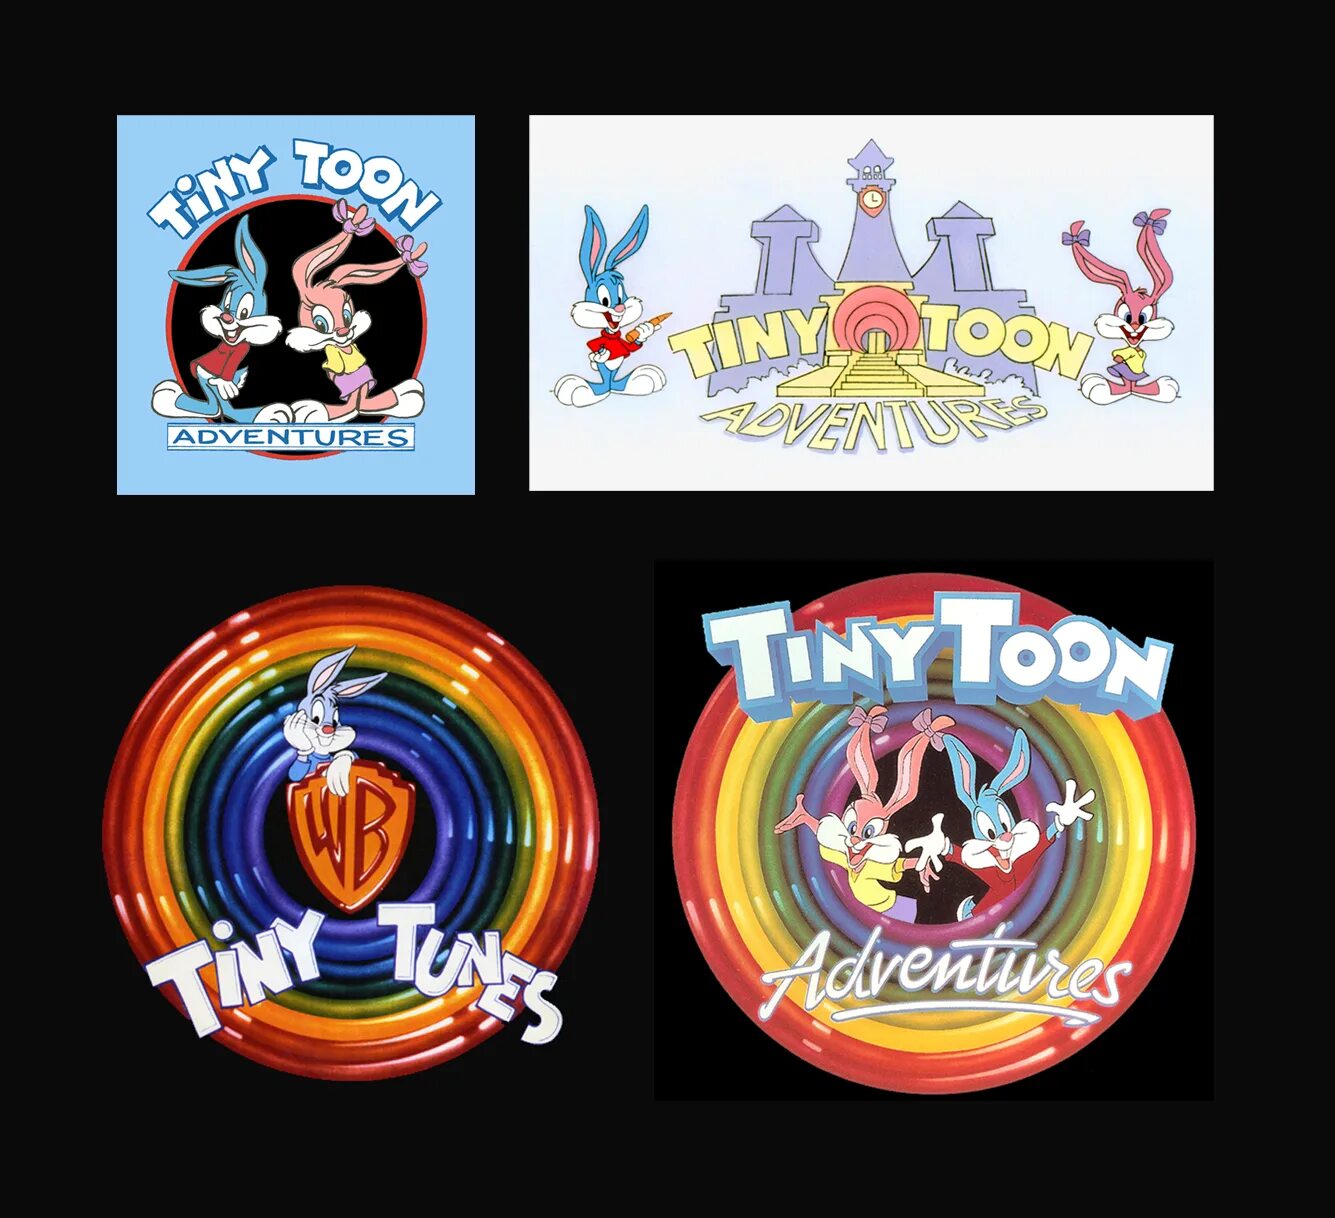 Tiny toon фигурки. Tiny toon Adventures пластилин. Tiny toon Adventures карта. Обложка на диск PS 1 tiny Toony. Tiny tunes